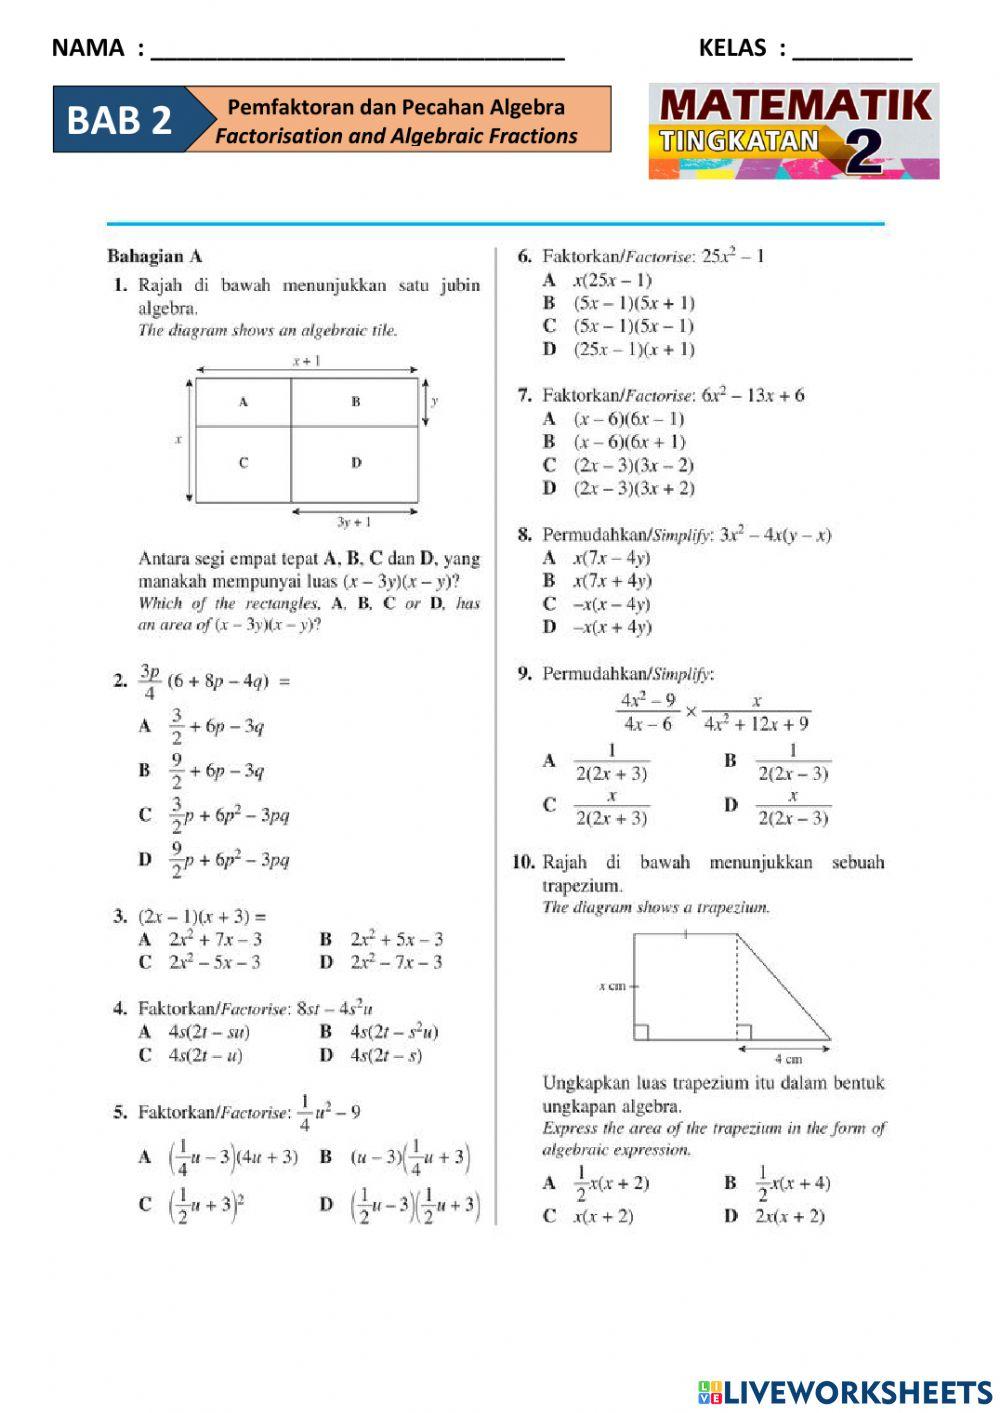 T2B2(1) Pemfaktoran dan Pecahan Algebra